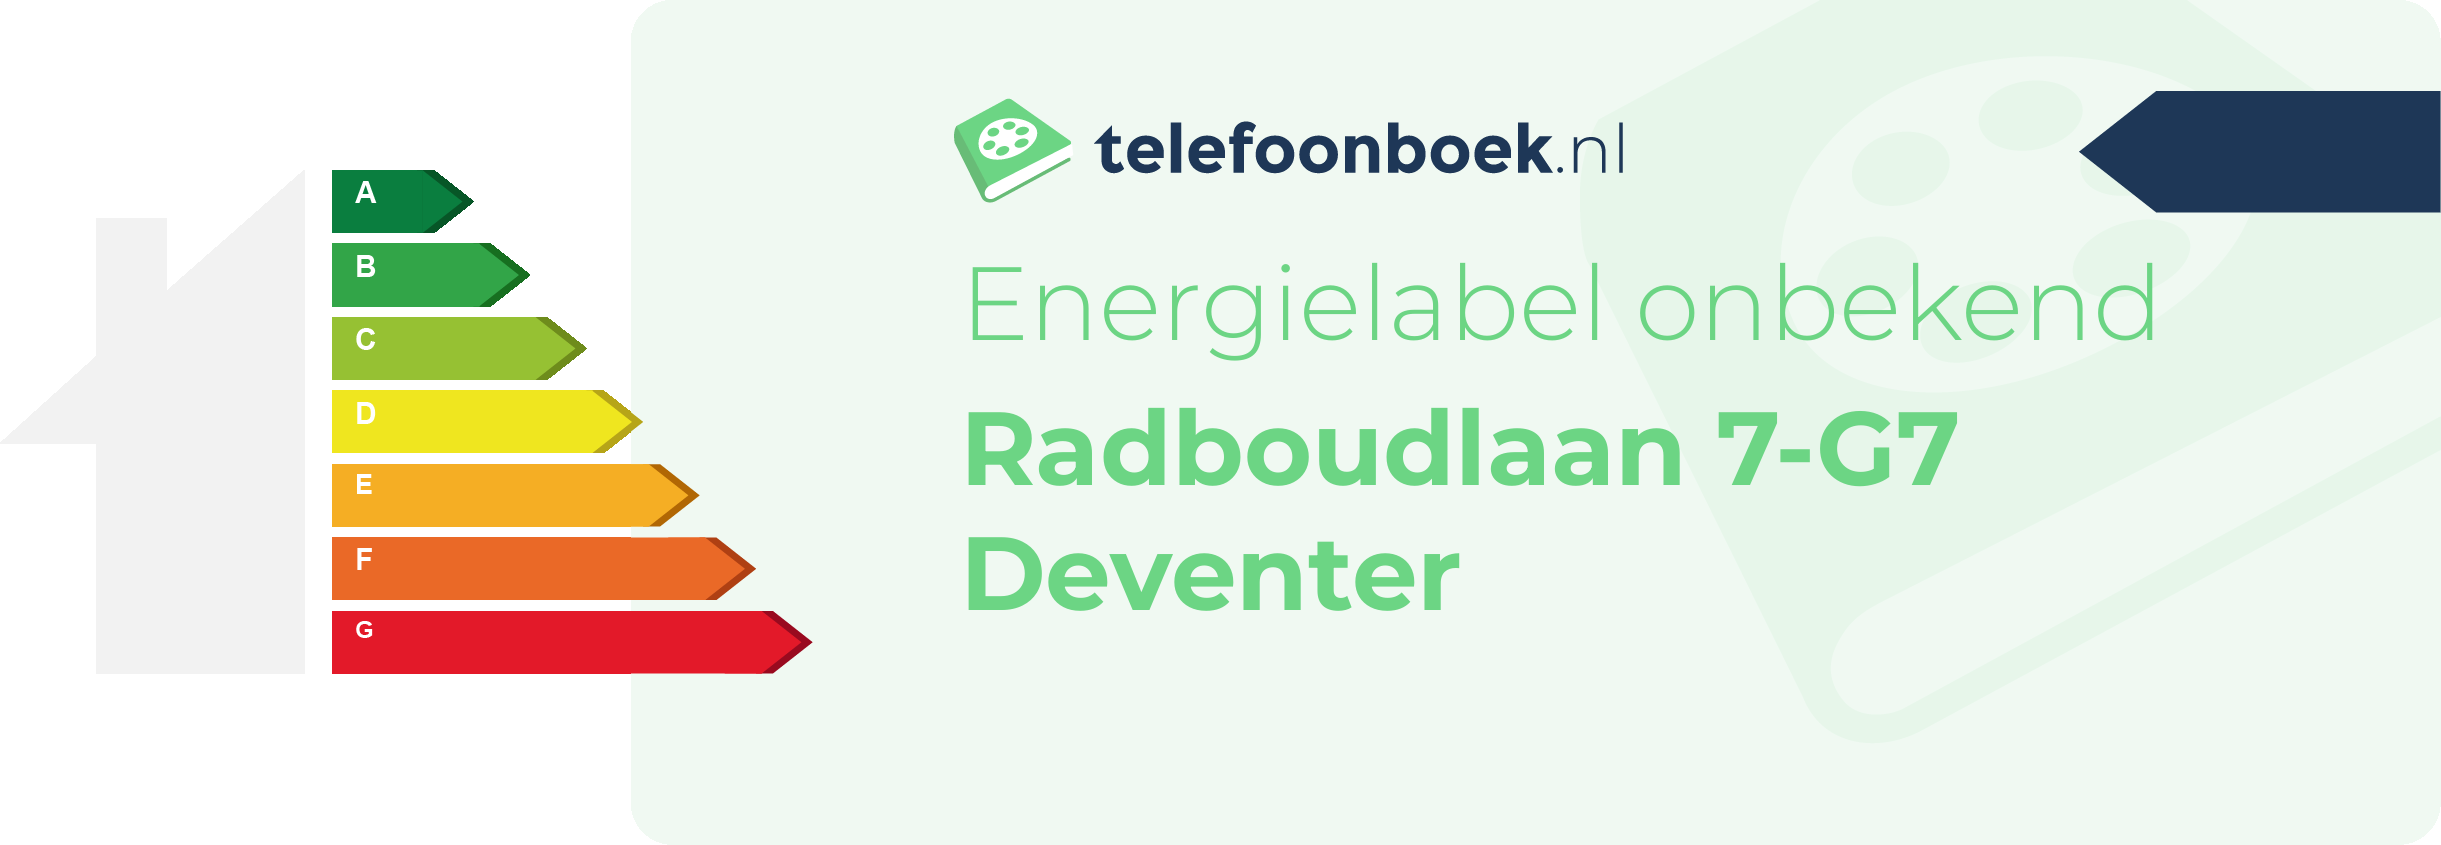 Energielabel Radboudlaan 7-G7 Deventer